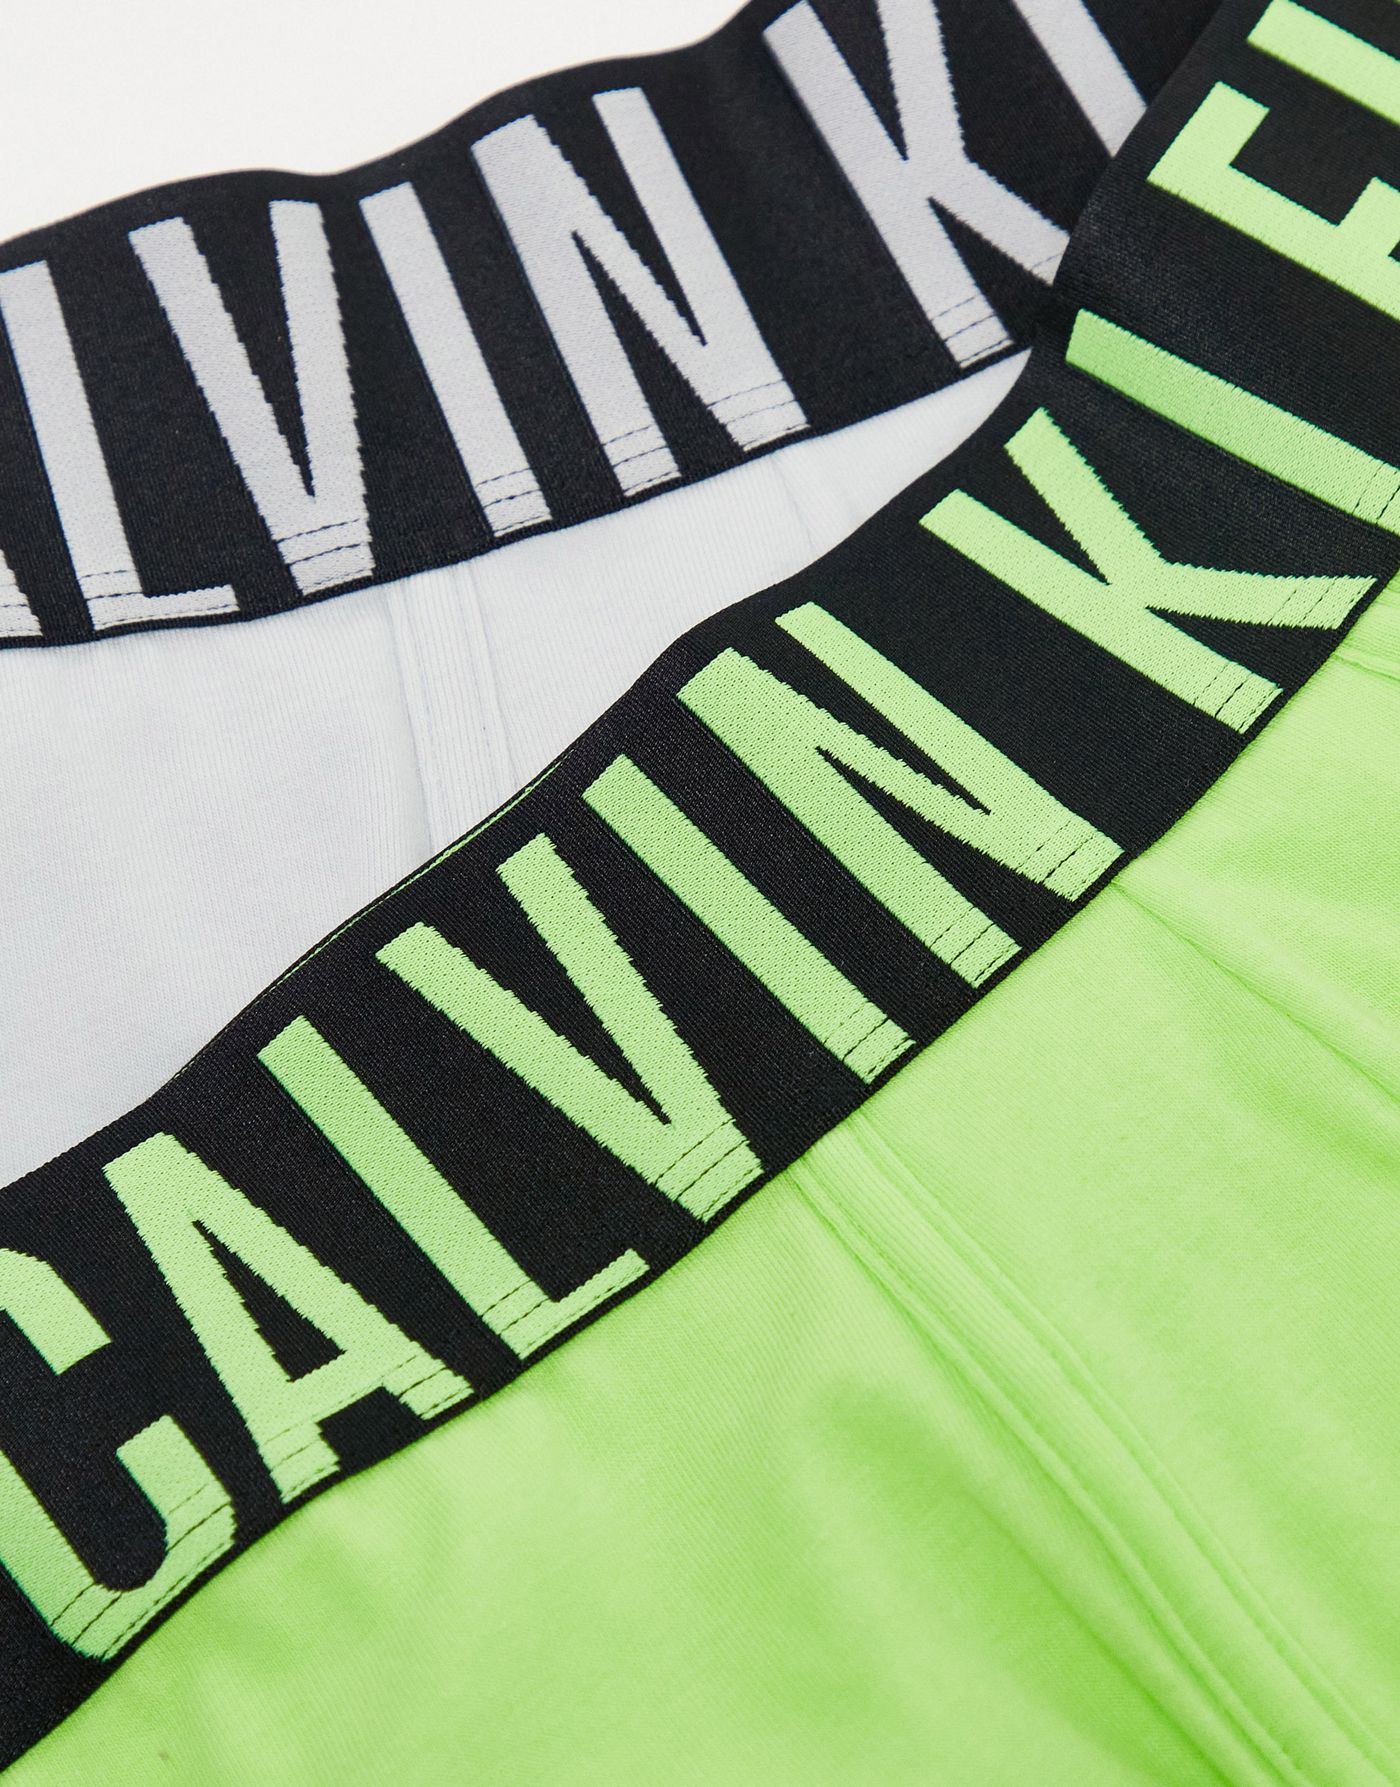 Calvin Klein 2 pack intense power trunks in multi